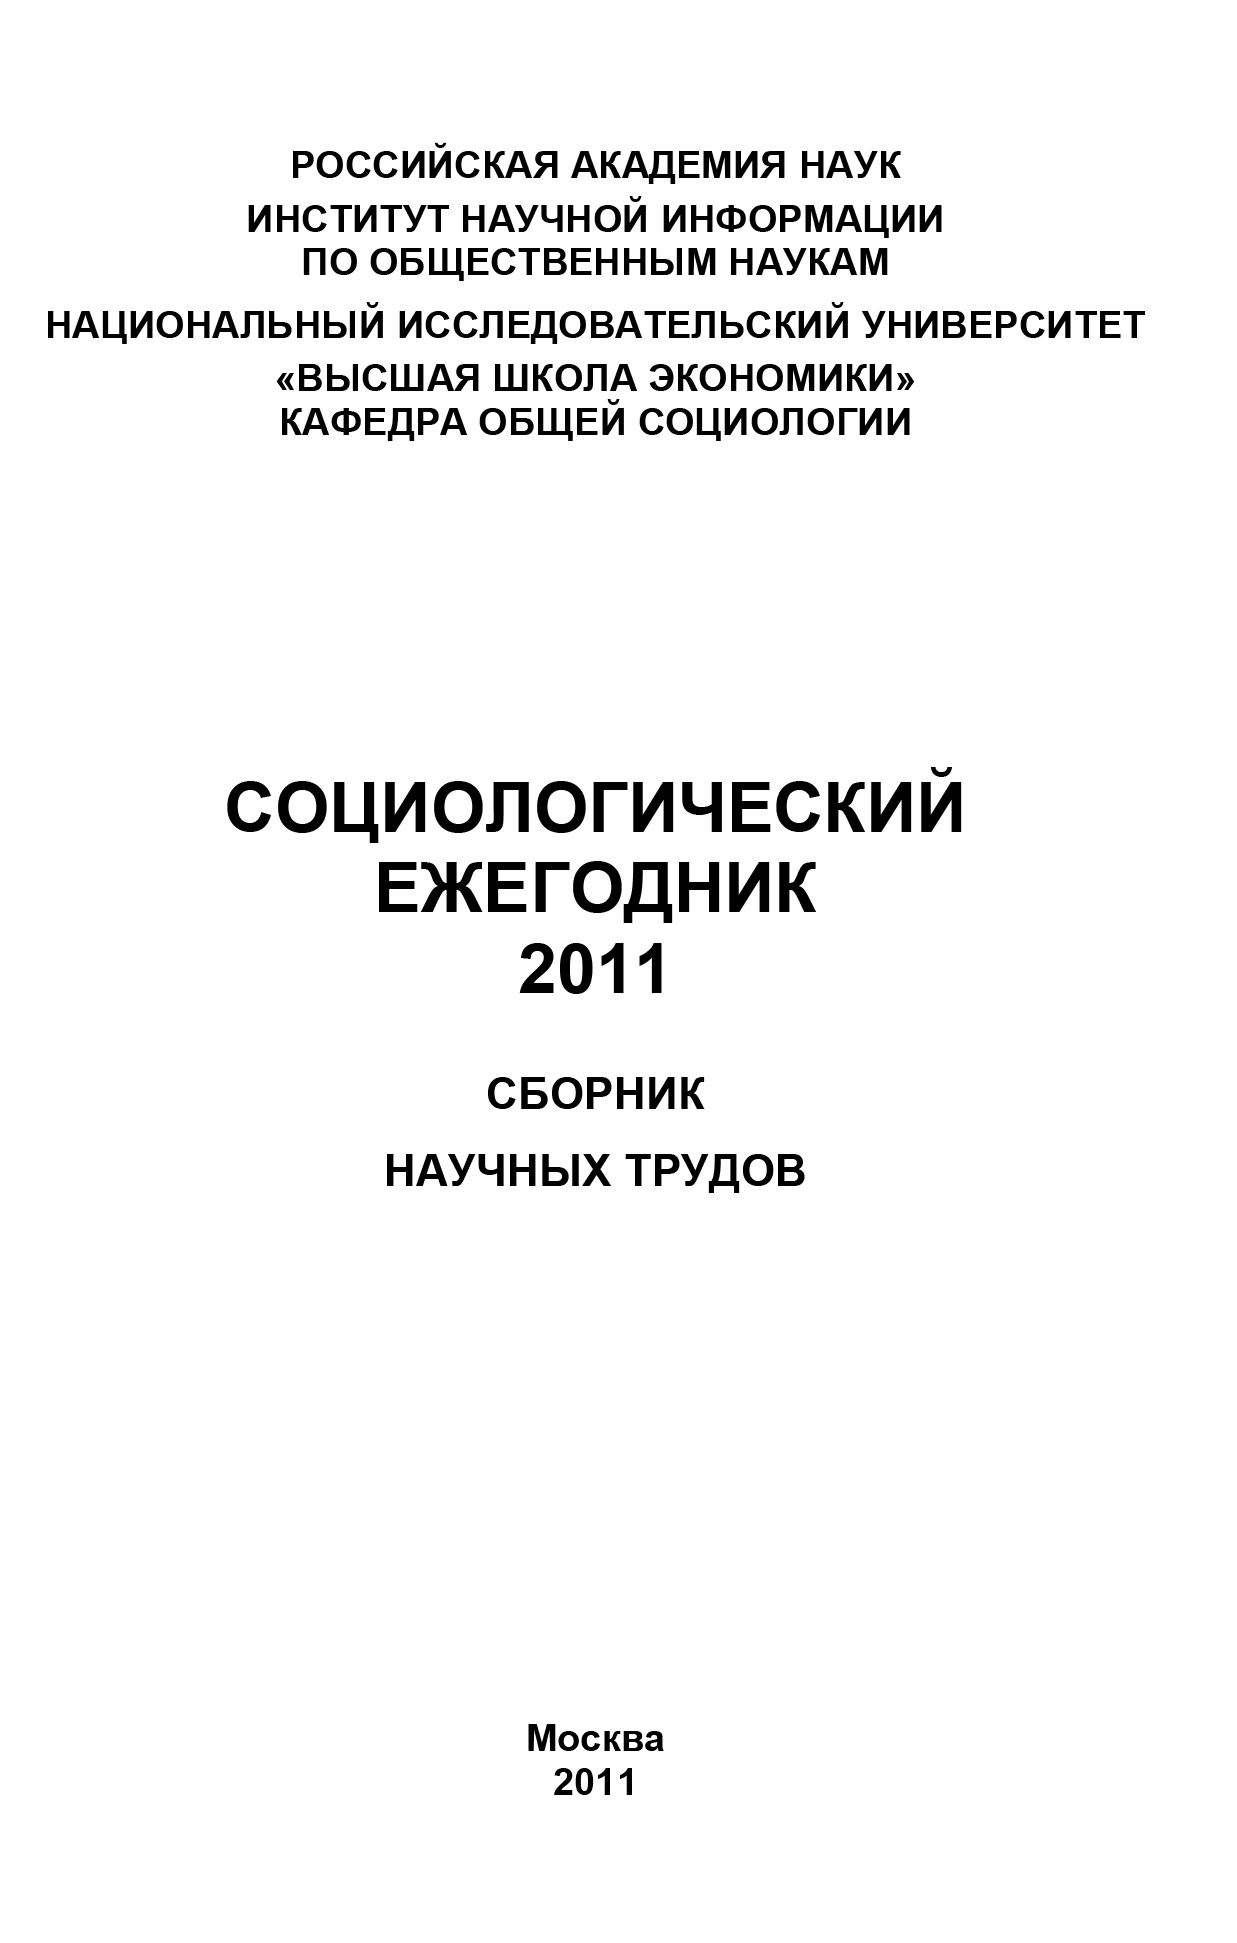 Социологический ежегодник 2011